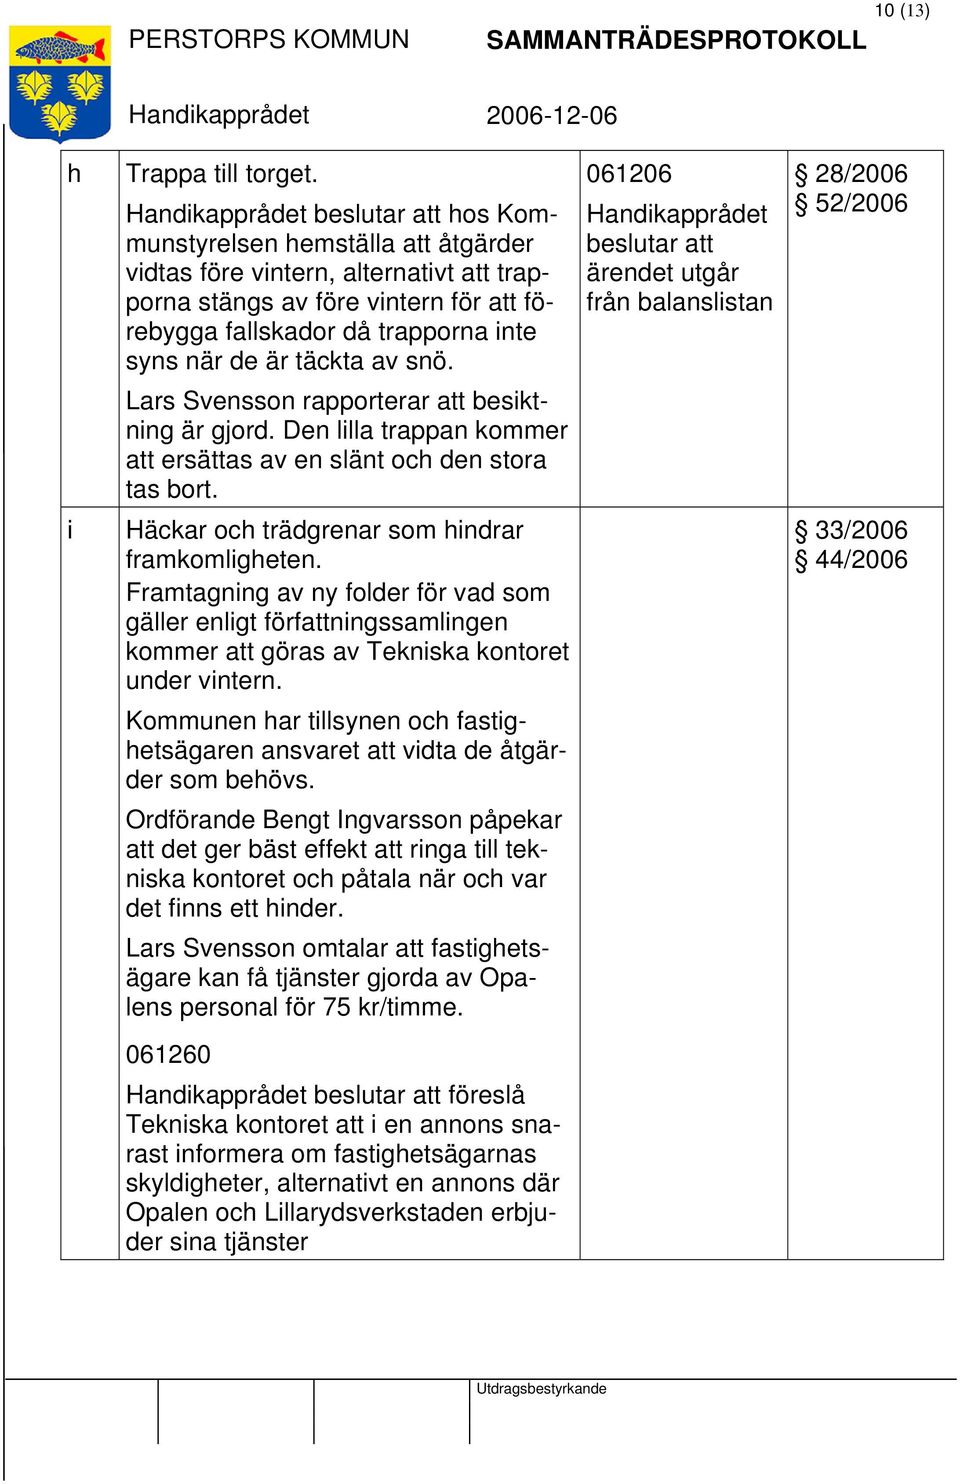 snö. 061206 beslutar att ärendet utgår från balanslistan 28/2006 52/2006 Lars Svensson rapporterar att besiktning är gjord. Den lilla trappan kommer att ersättas av en slänt och den stora tas bort.